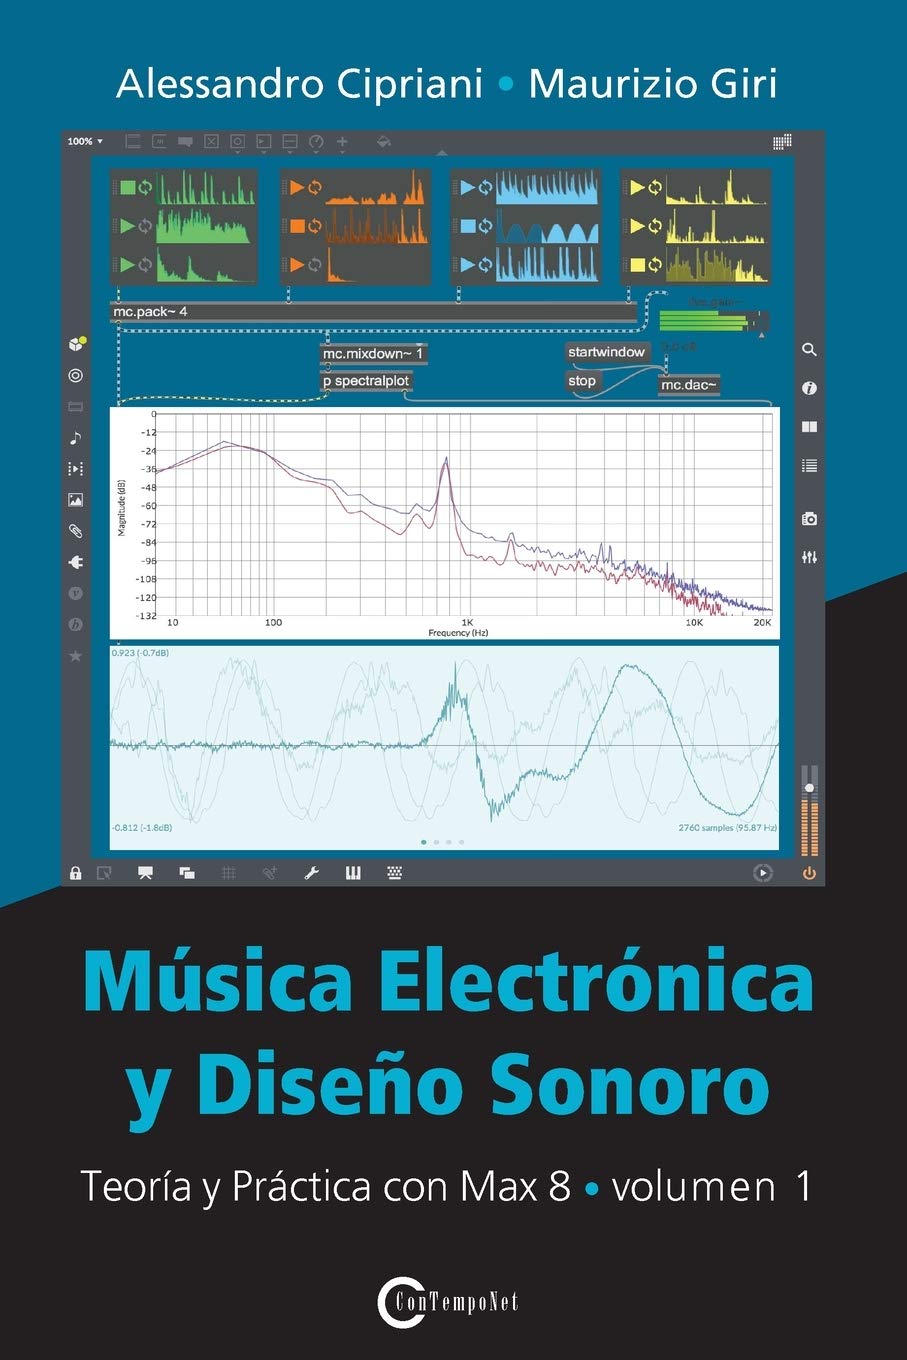 Libri Alessandro Cipriani / Maurizio Giri - Musica Electronica Y Diseno Sonoro Vol 01 NUOVO SIGILLATO, EDIZIONE DEL 29/10/2020 SUBITO DISPONIBILE